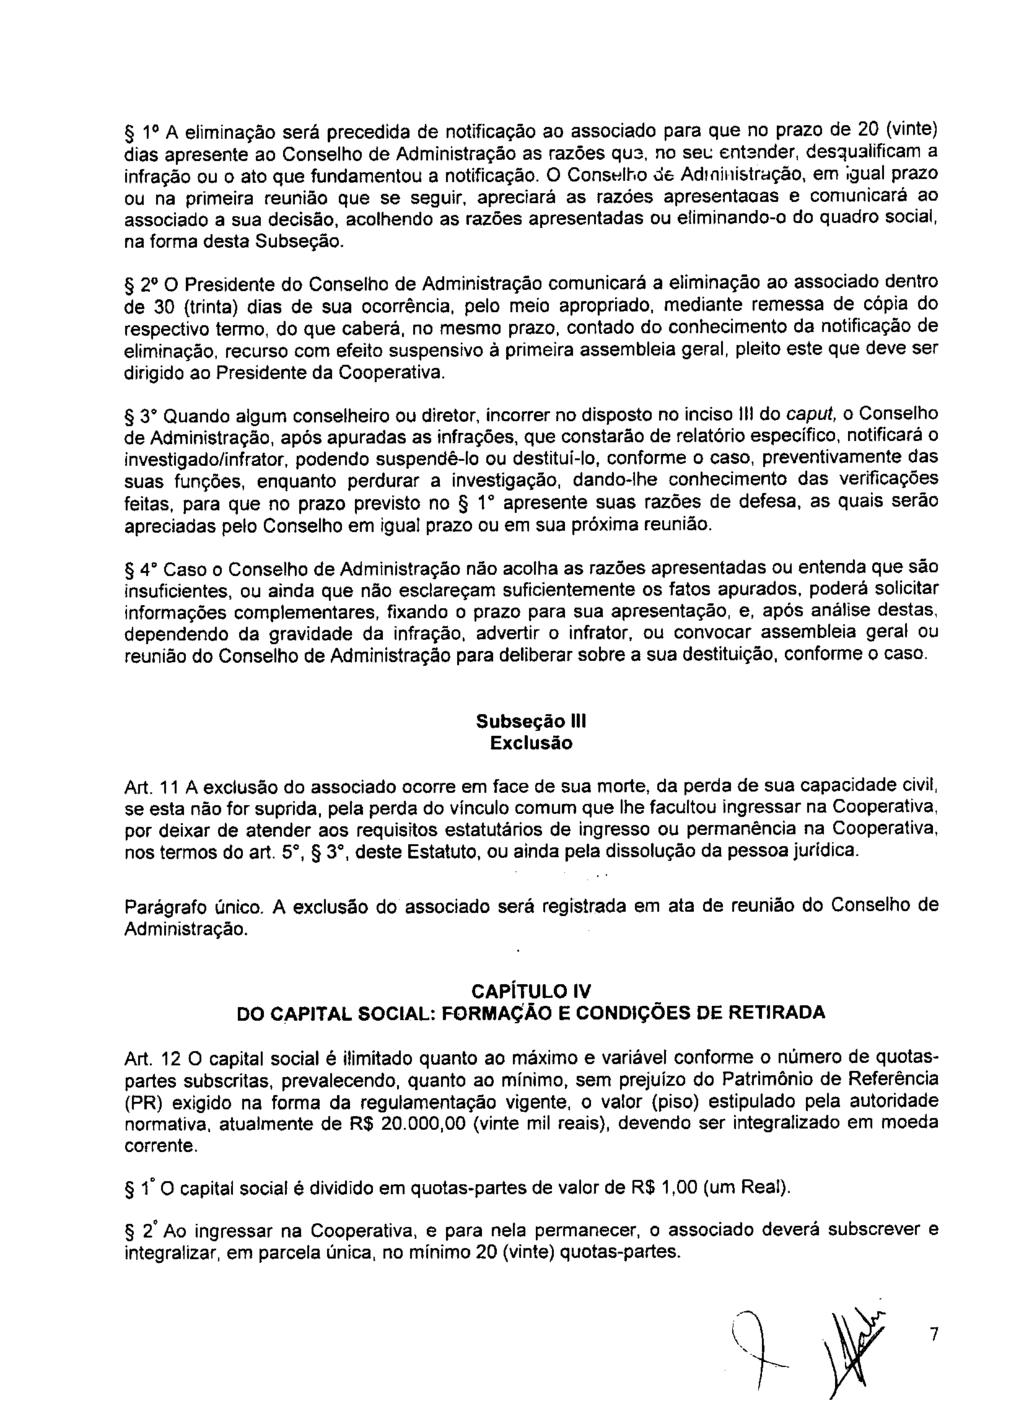 fls. 13 Este documento é cópia do original, assinado digitalmente por ANA ROSA MARQUES CROCE e Tribunal de Justica Sao Paulo, protocolado em 10/02/2016 às 15:37, sob o número